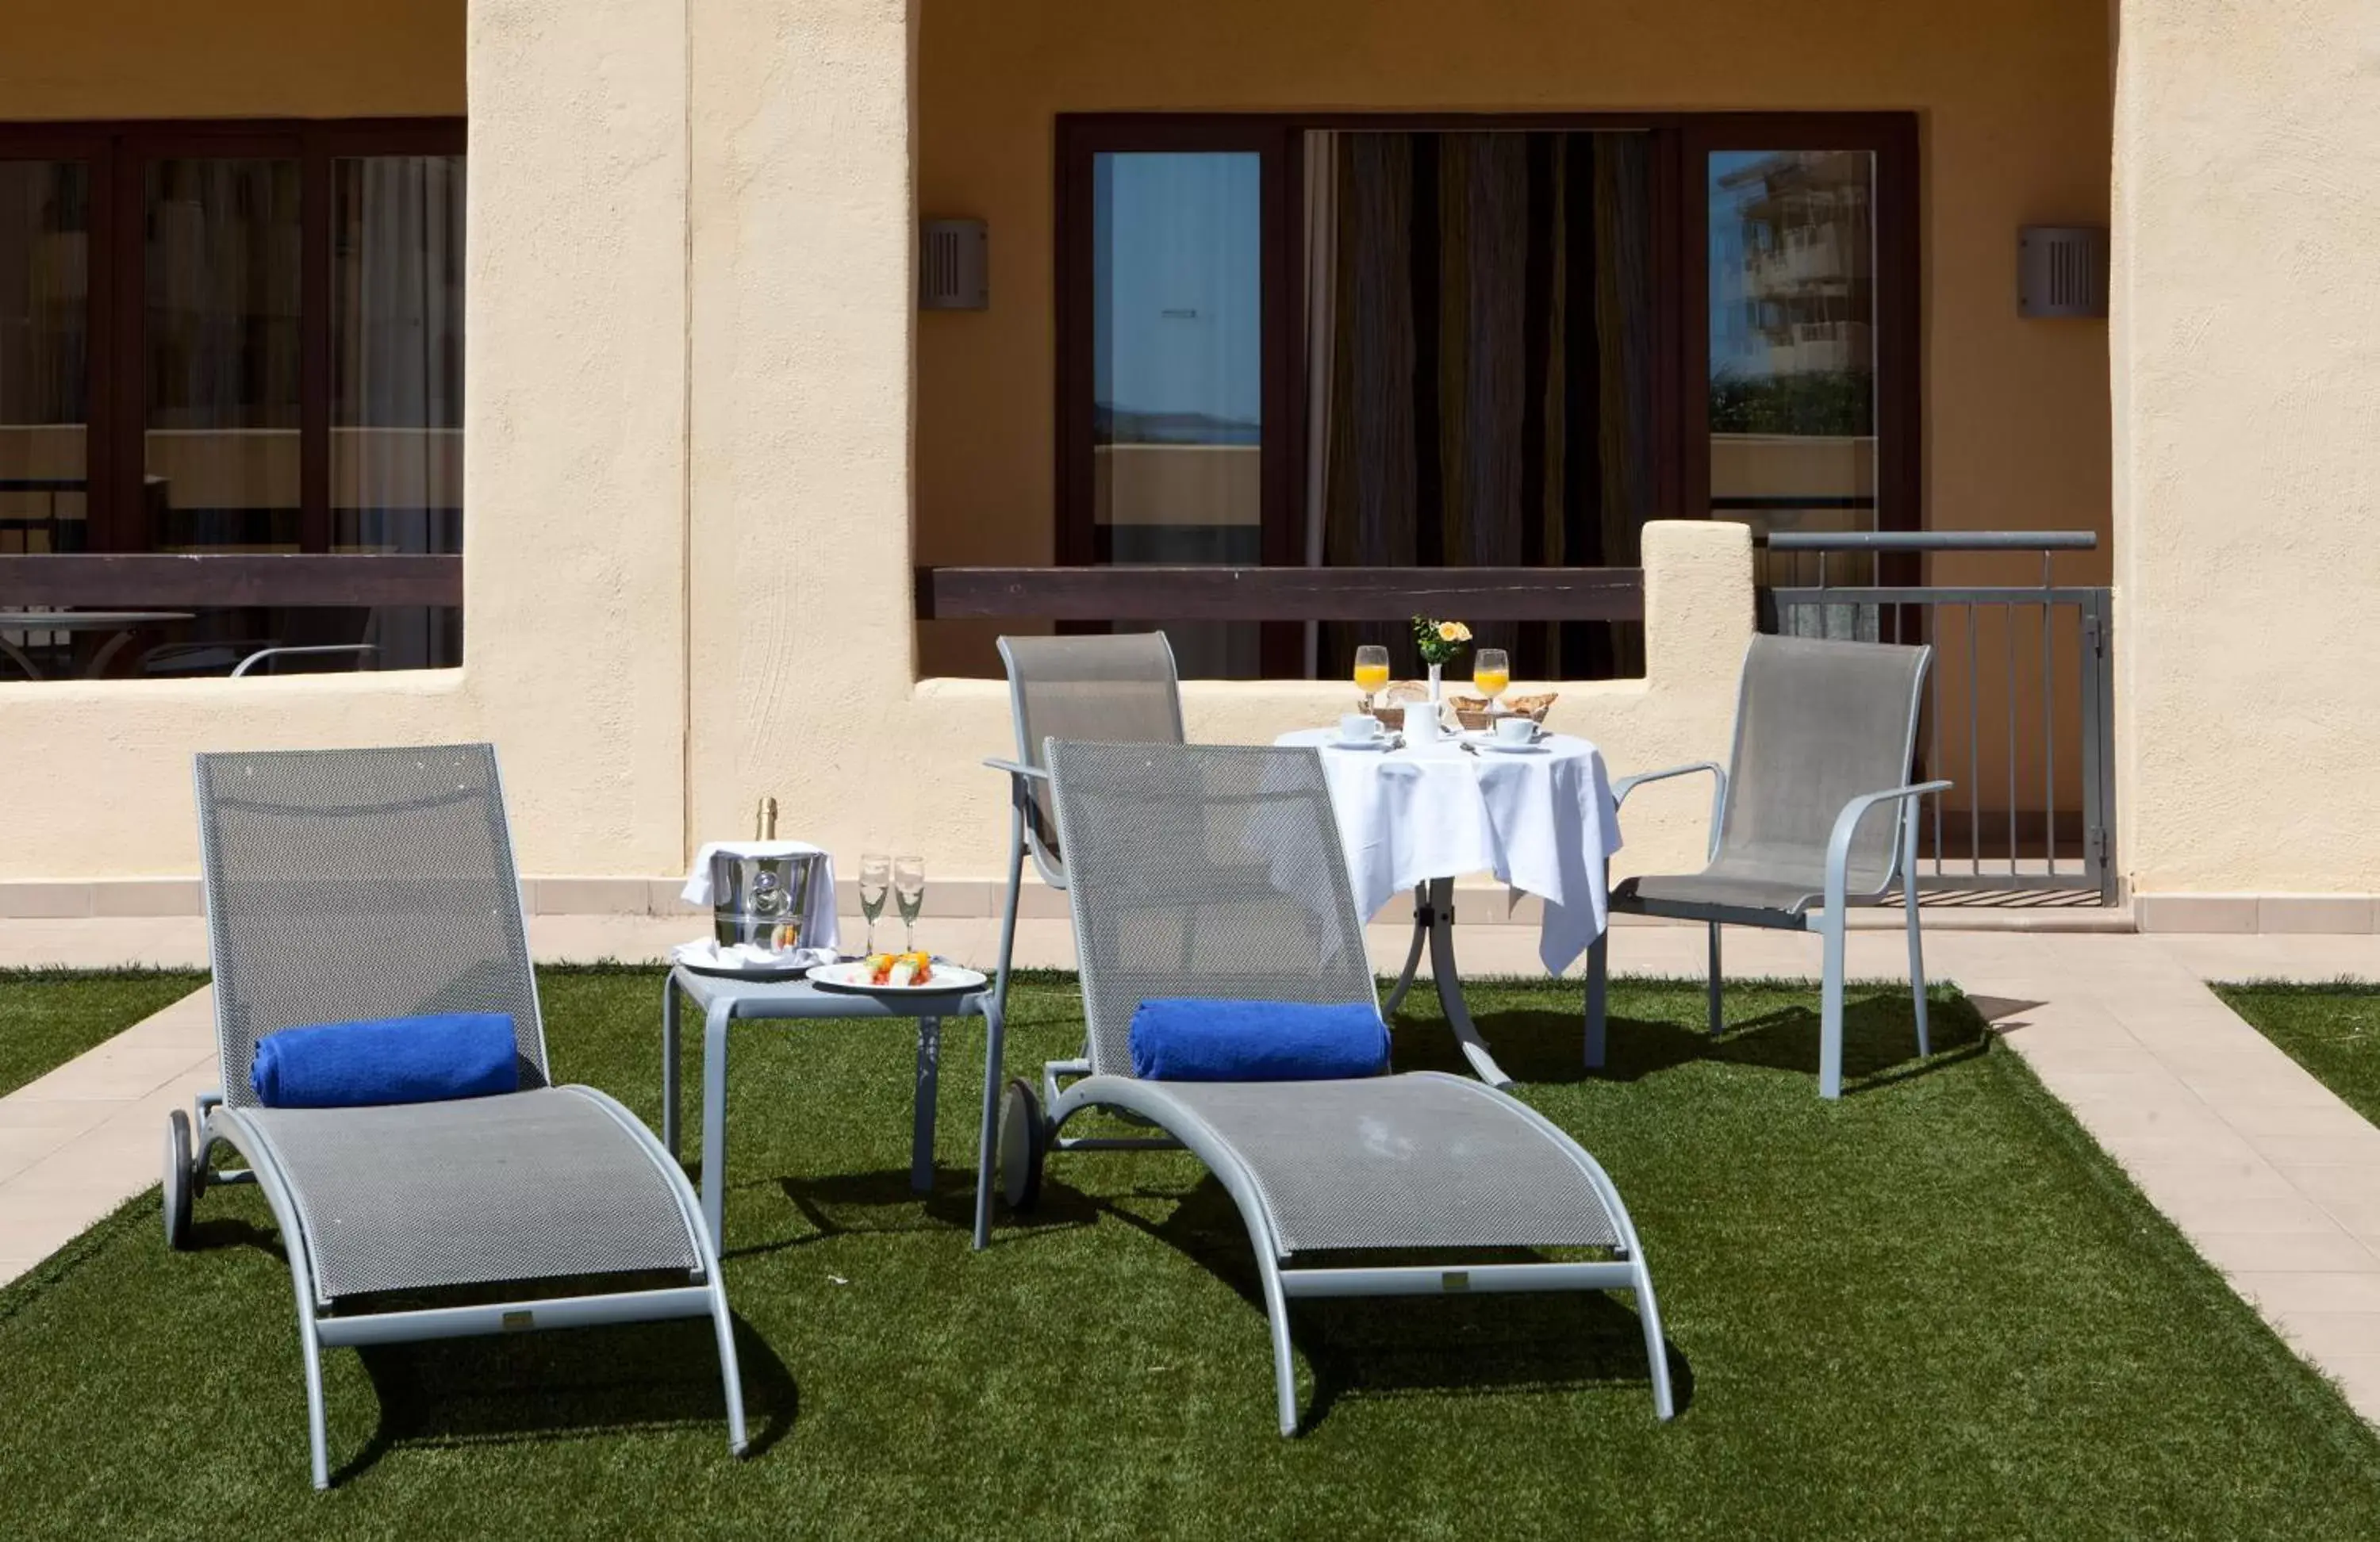 Balcony/Terrace, Patio/Outdoor Area in Senator Mar Menor Golf & Spa Resort